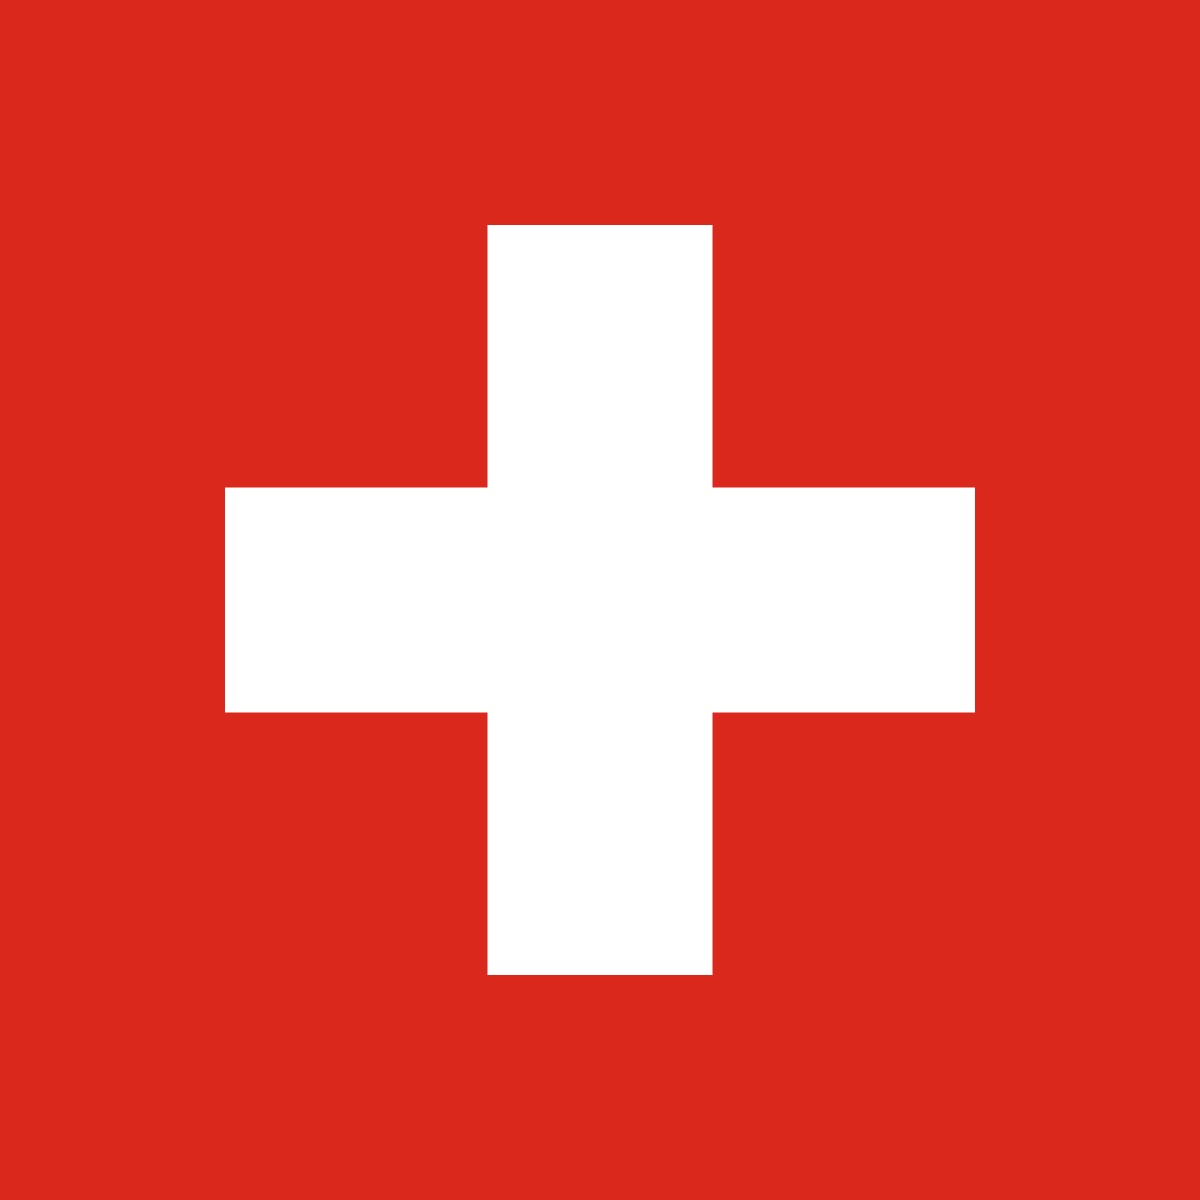 Svizzera - Wikipedia